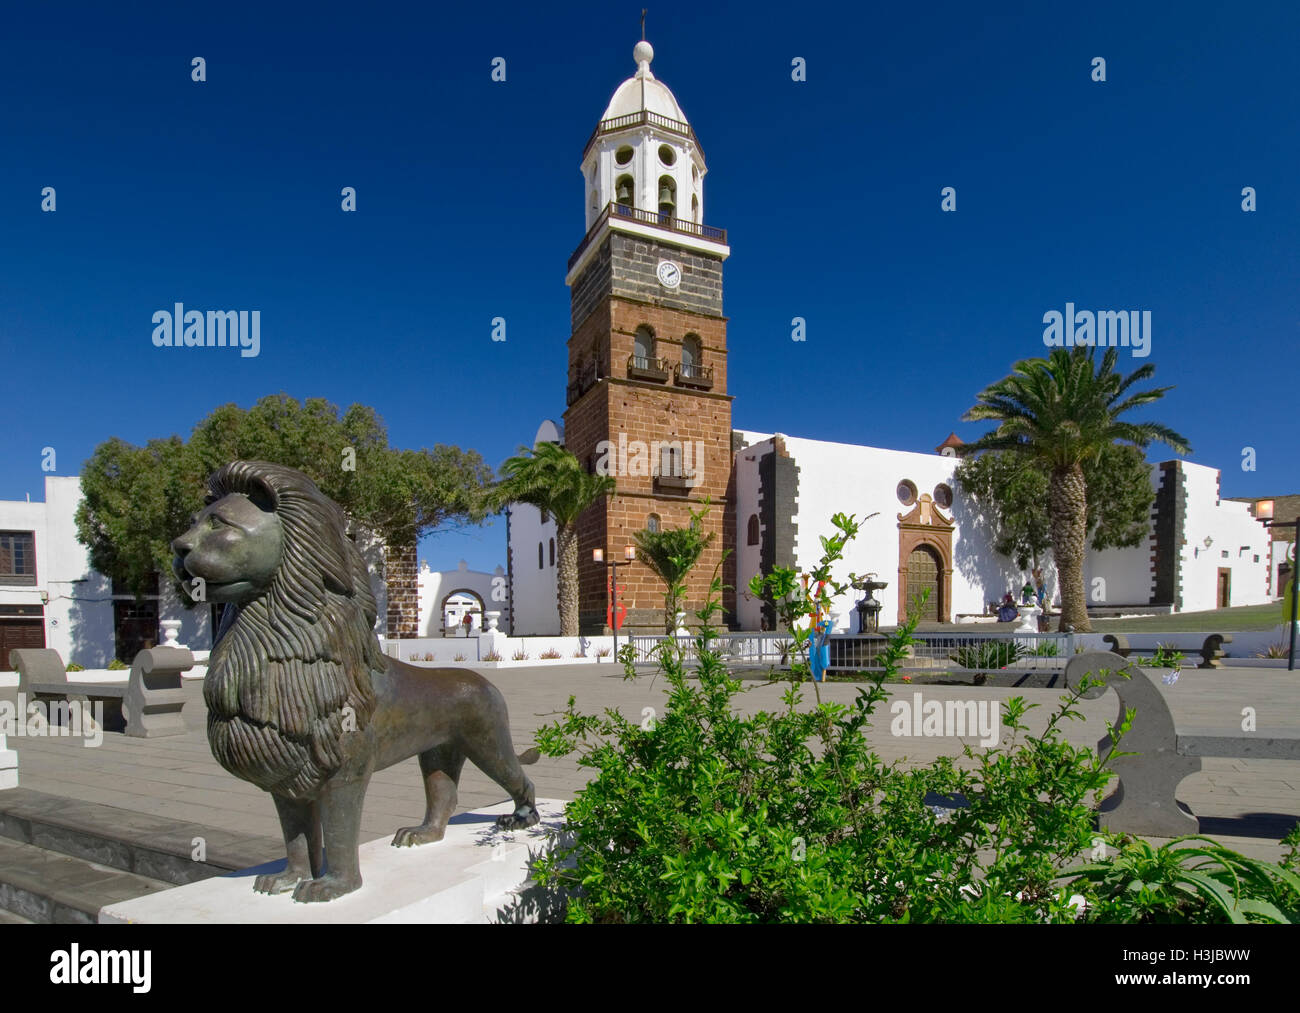 TEGUISE PLACE DE LA VIEILLE VILLE L'église médiévale de "Nuestra Señora de Guadalupe' dans la place de la vieille ville de Teguise, Lanzarote, Espagne Banque D'Images